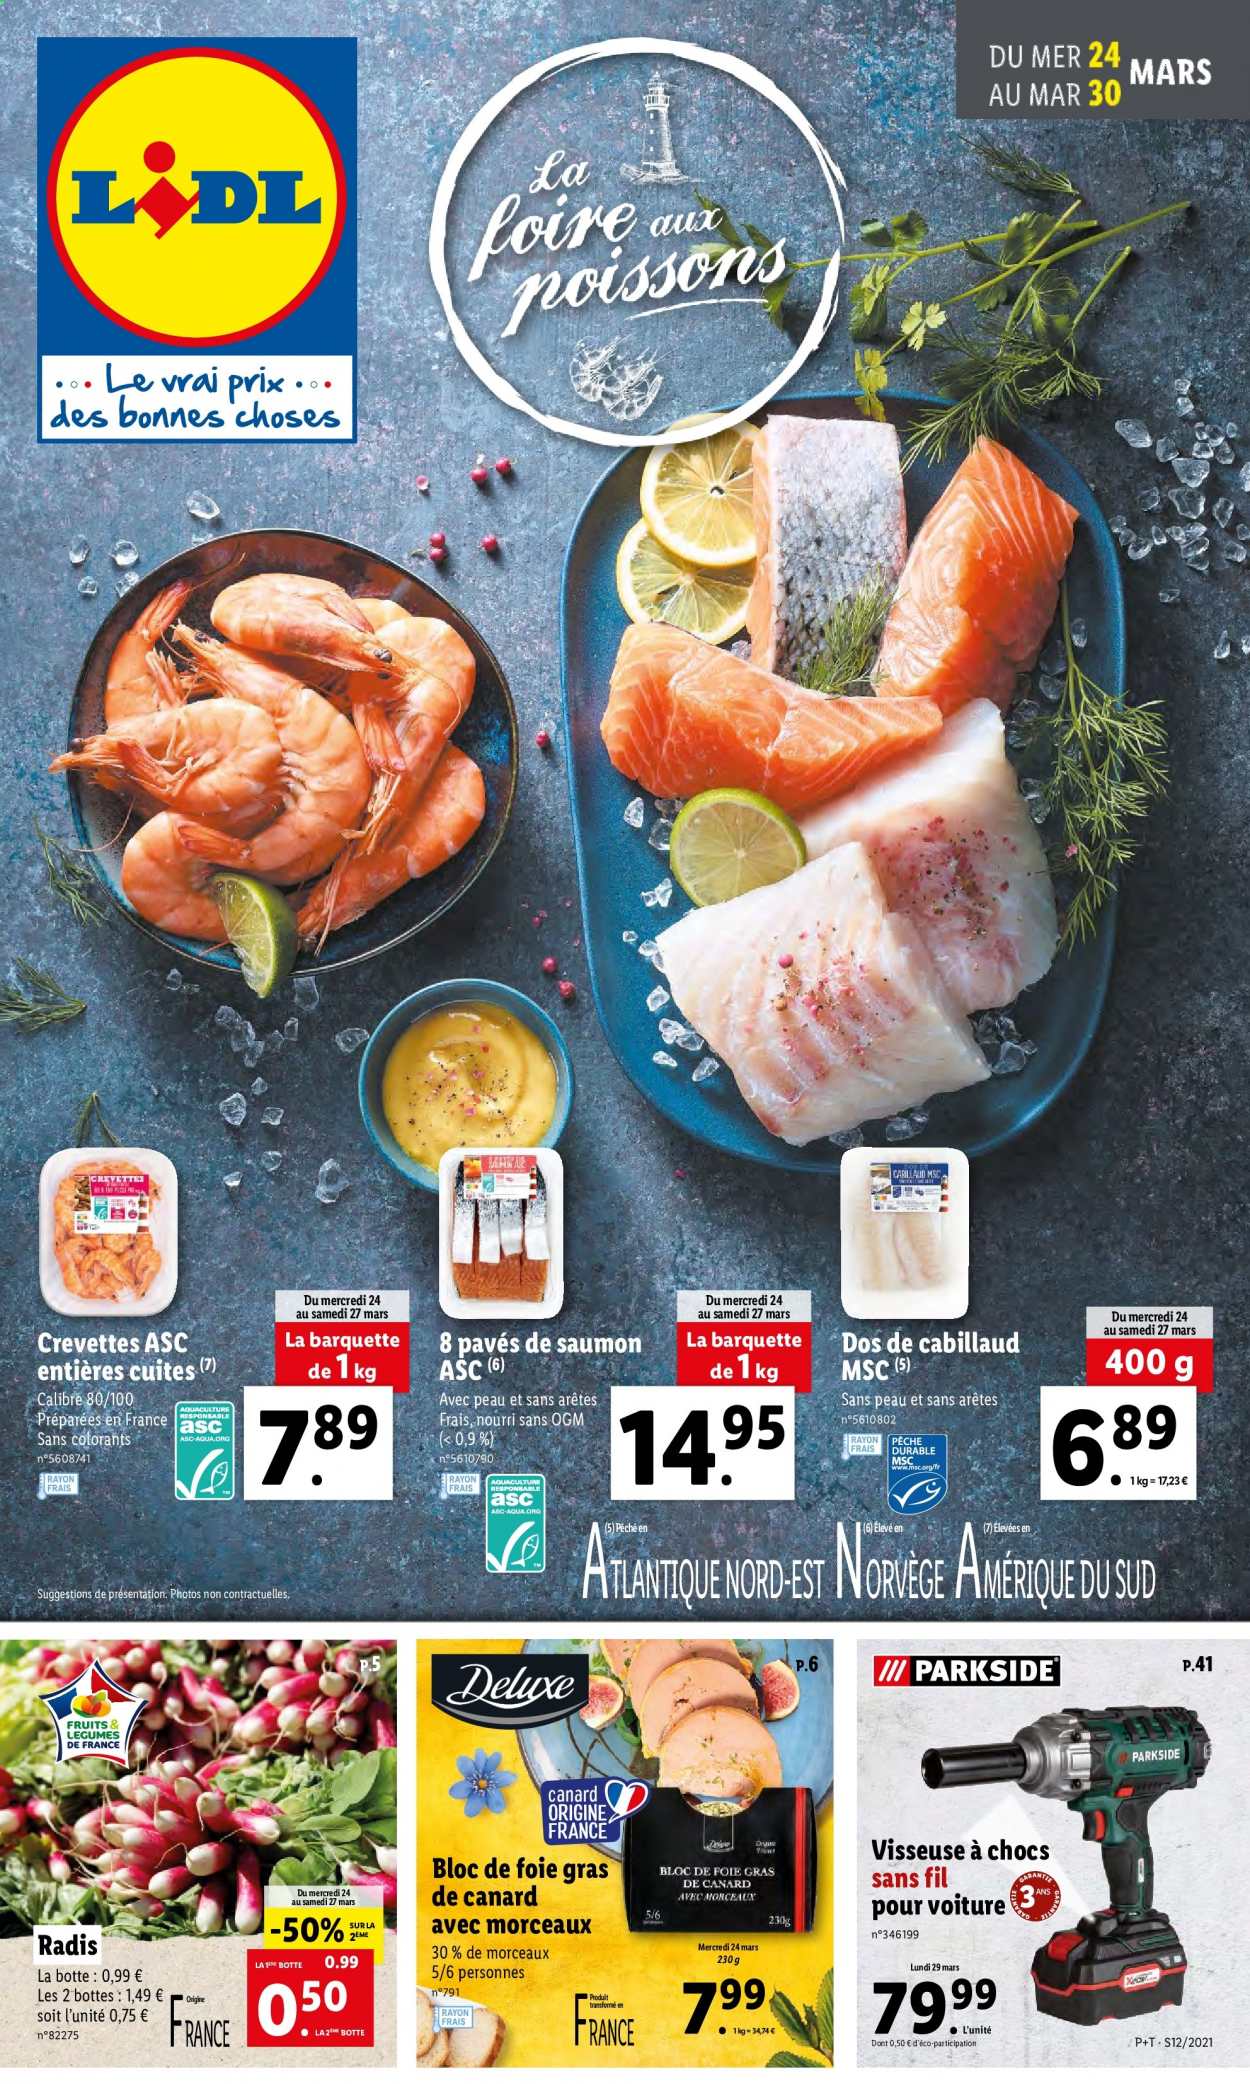 thumbnail - Catalogue Lidl - 24/03/2021 - 30/03/2021 - Produits soldés - bottes, radis, saumon, cabillaud, crevettes, pavés de saumon, foie gras, visseuse. Page 1.